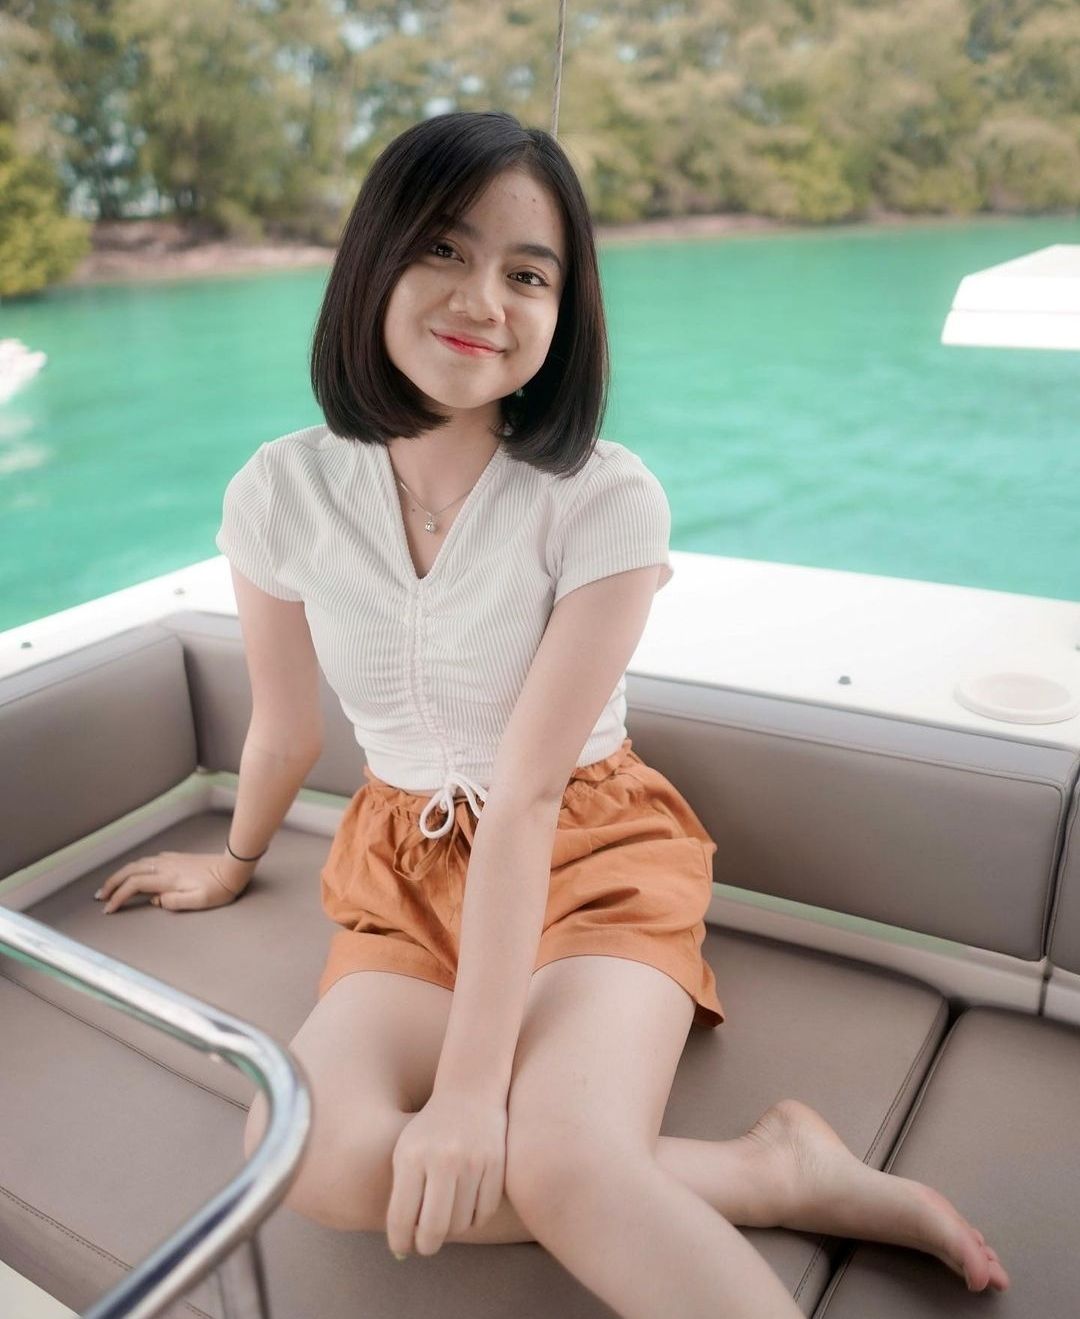 Inilah Sosok Gadis Cantik ONIC Kayes Yang Sedang Ramai di Media Sosial, Cek Profil Lengkap Serta Karirnya - Teras Gorontalo